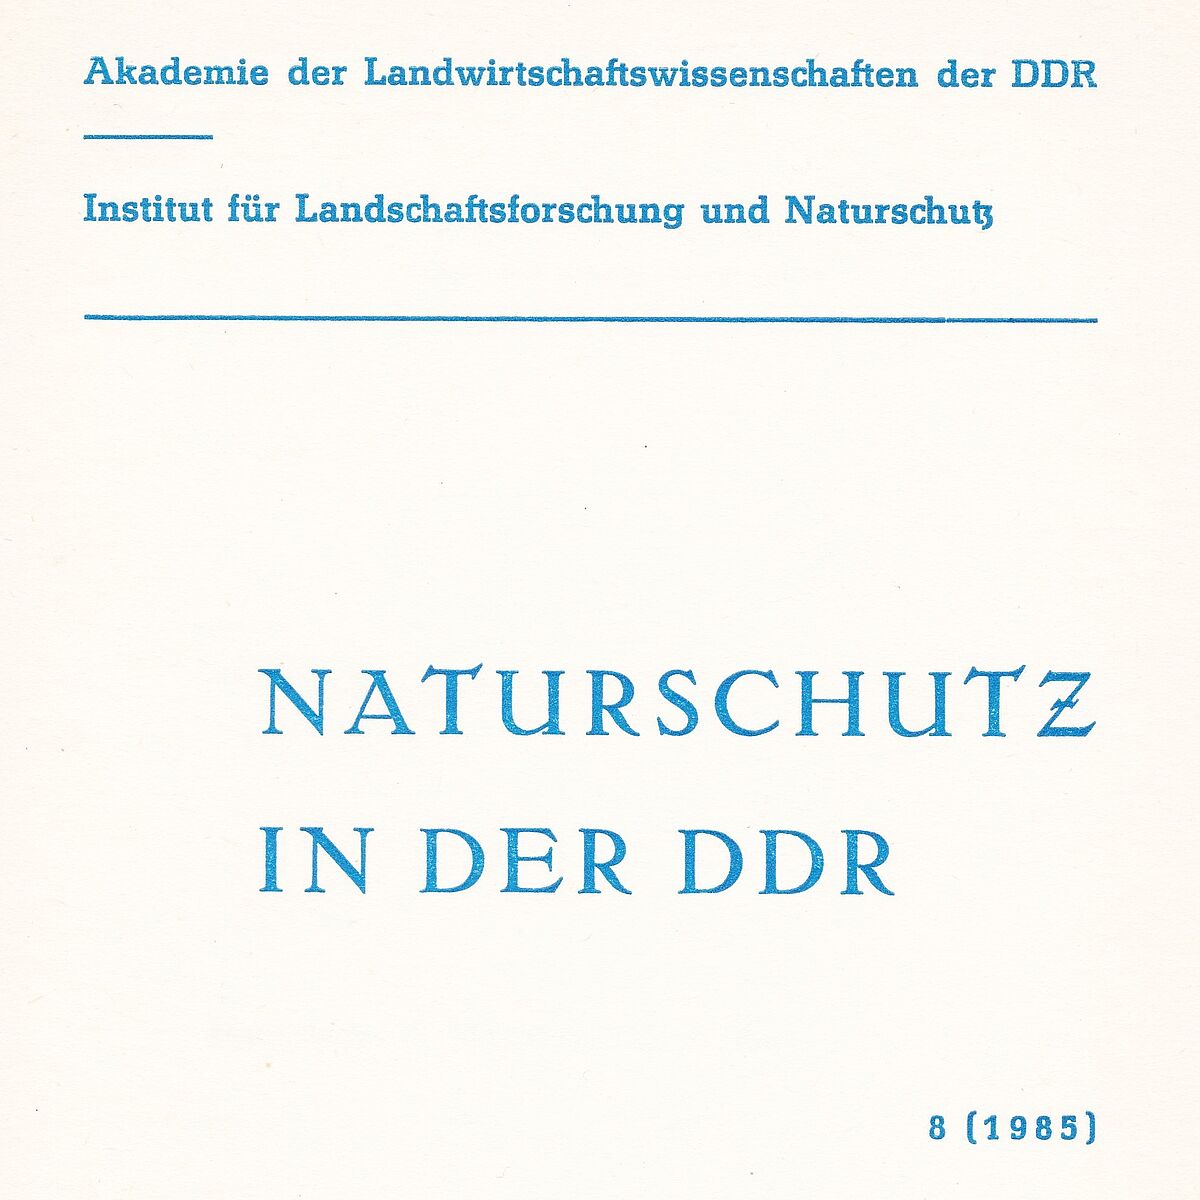 Naturschutz in der DDR